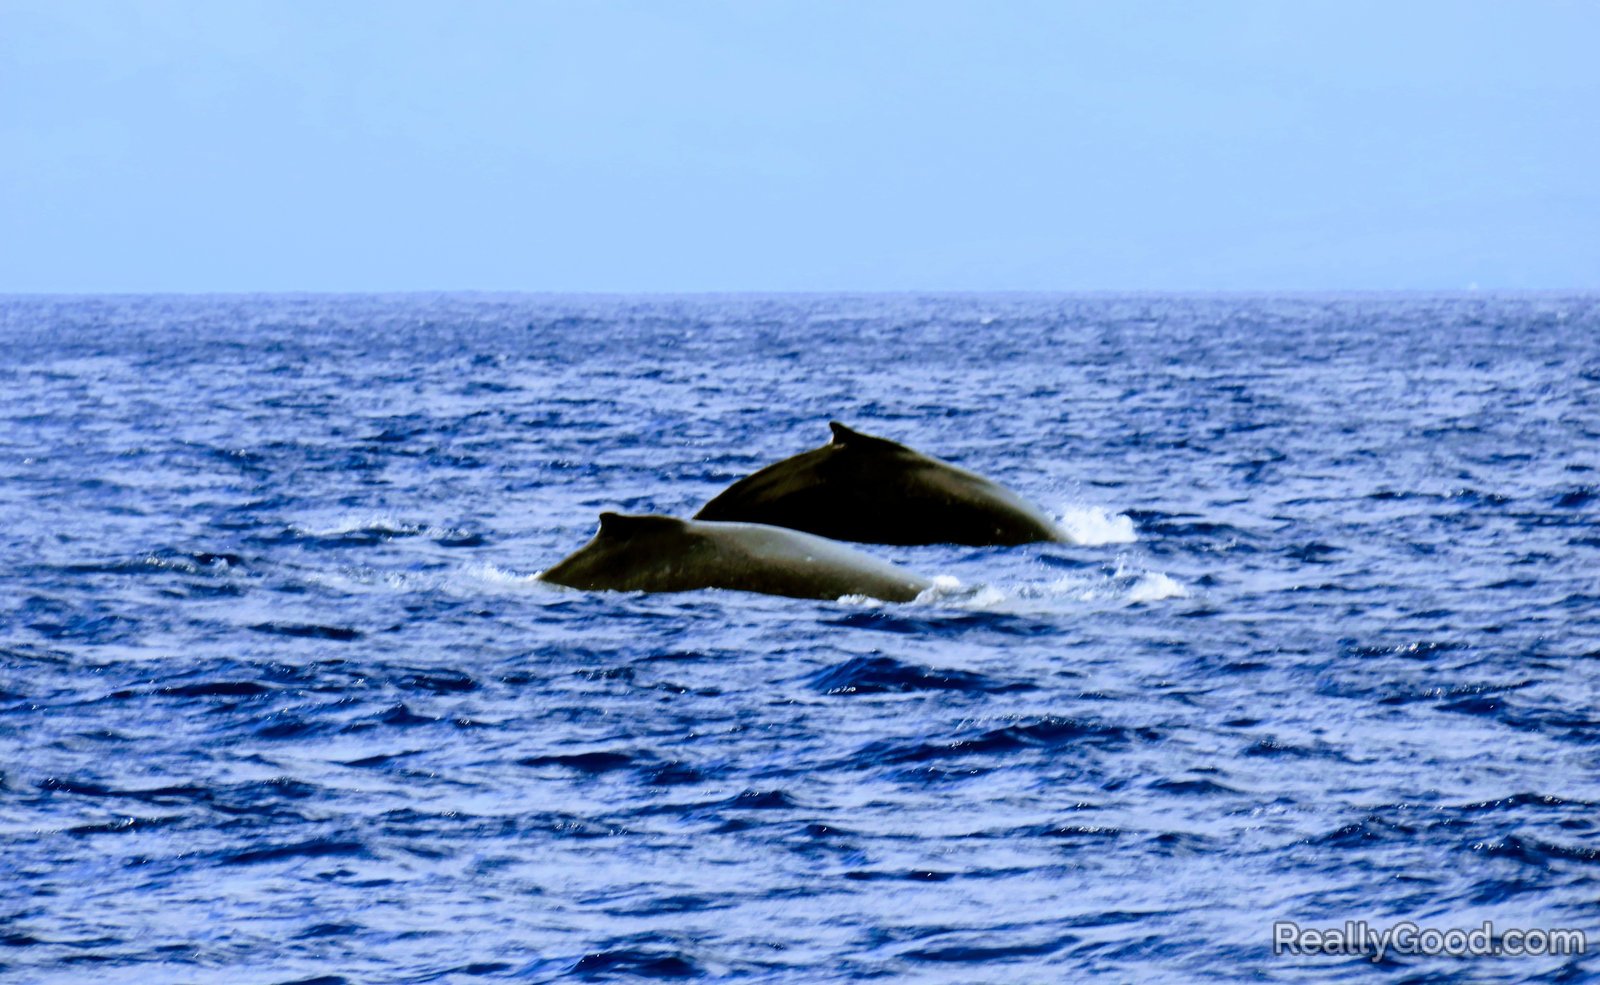 Humpback whales at Molokini, Maui